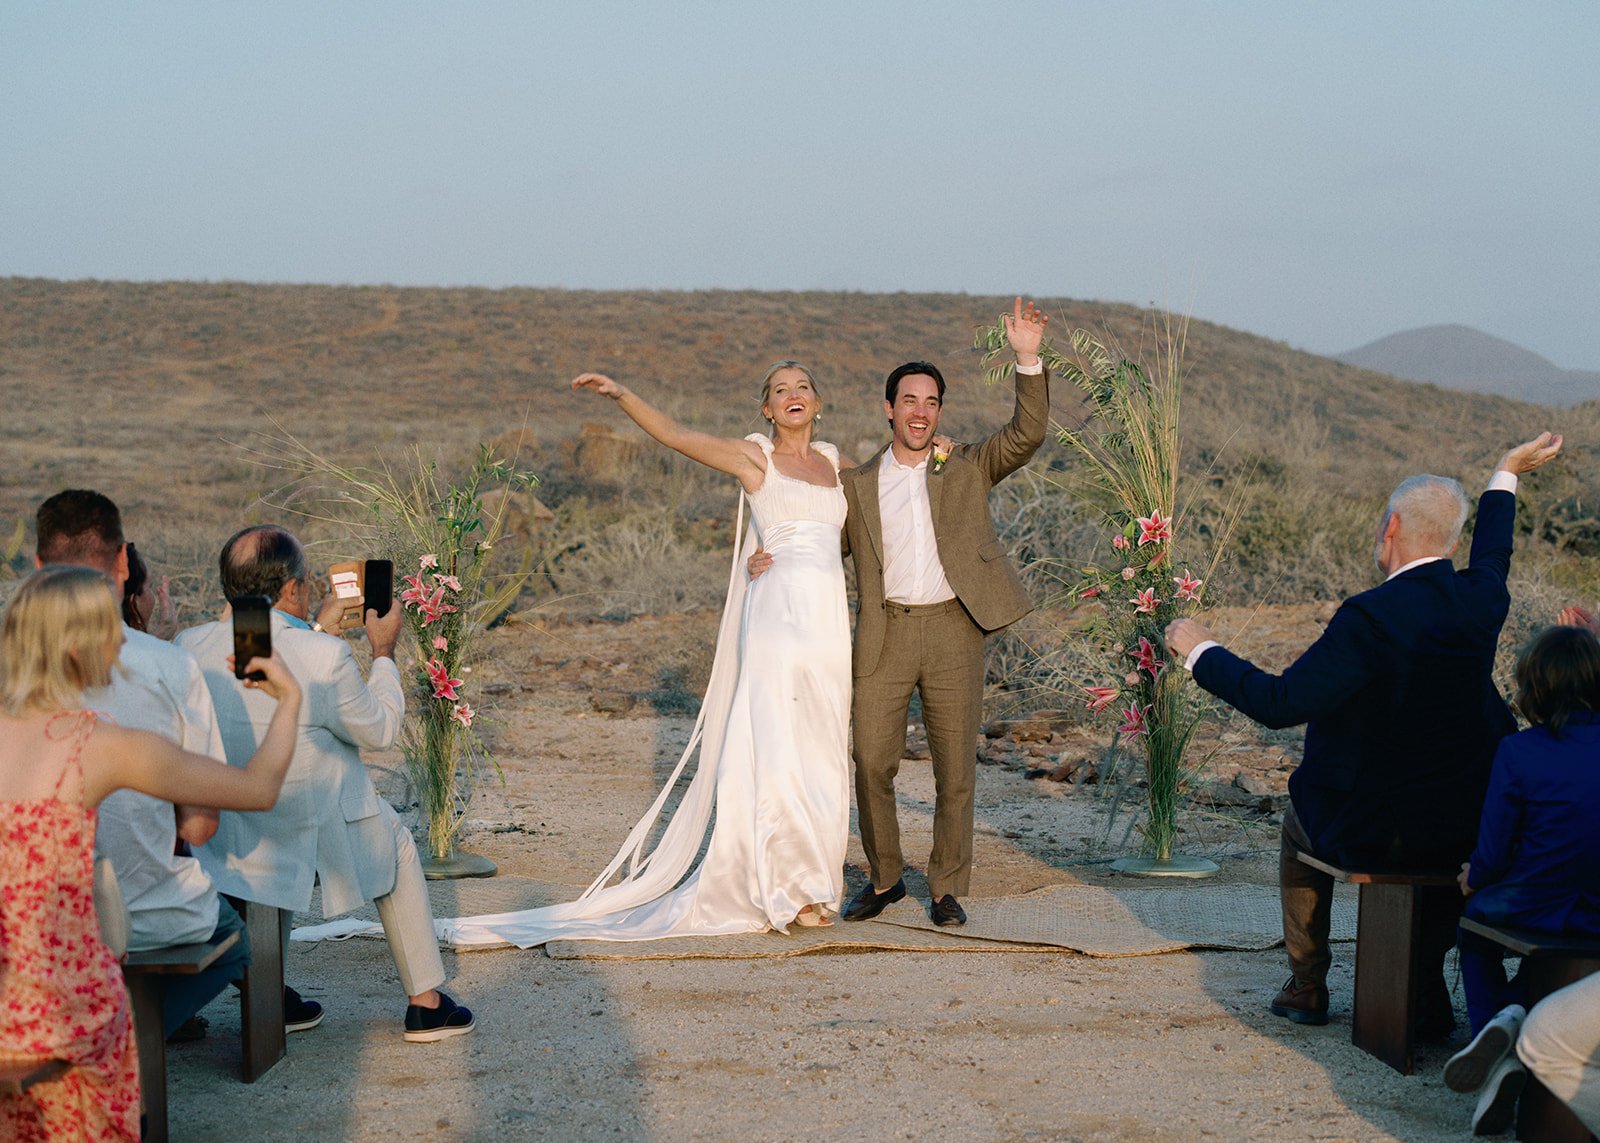 Best-Todos-Santos-Wedding-Photographer-Baja-El Mirador-La Bohemia-35mm-Film-Austin-Mexico-137.jpg